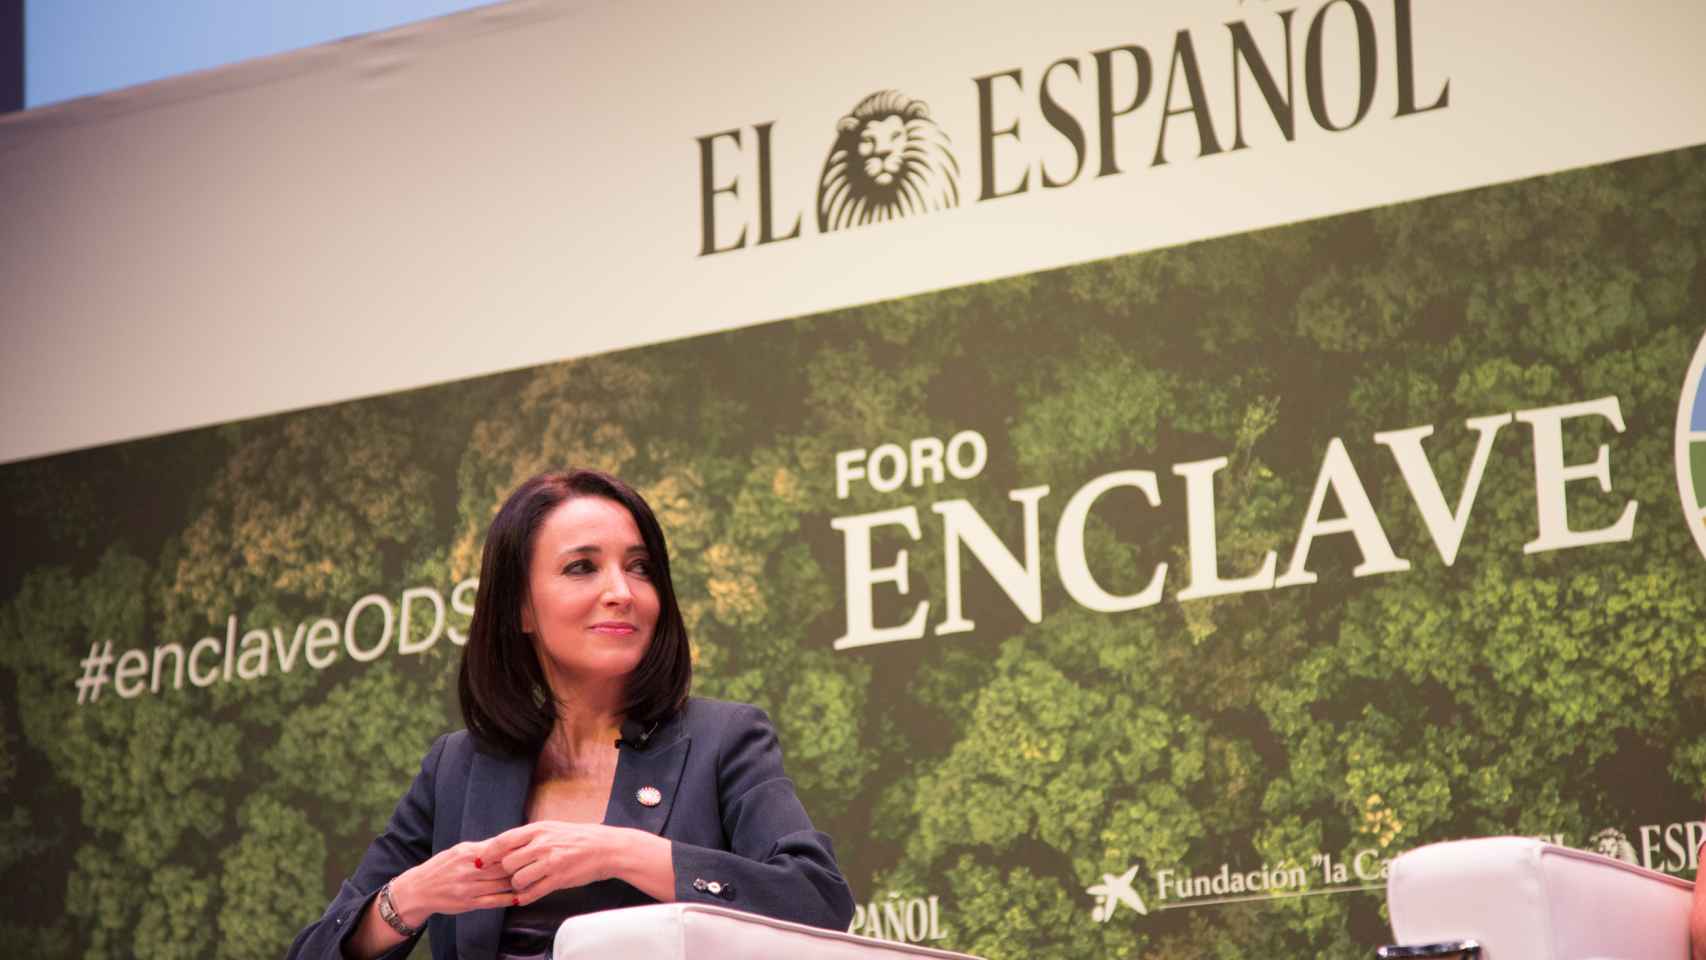 Cruz Sánchez de Lara, vicepresidenta de EL ESPAÑOL y editora de ENCLAVE ODS, fue la moderadora del foro.